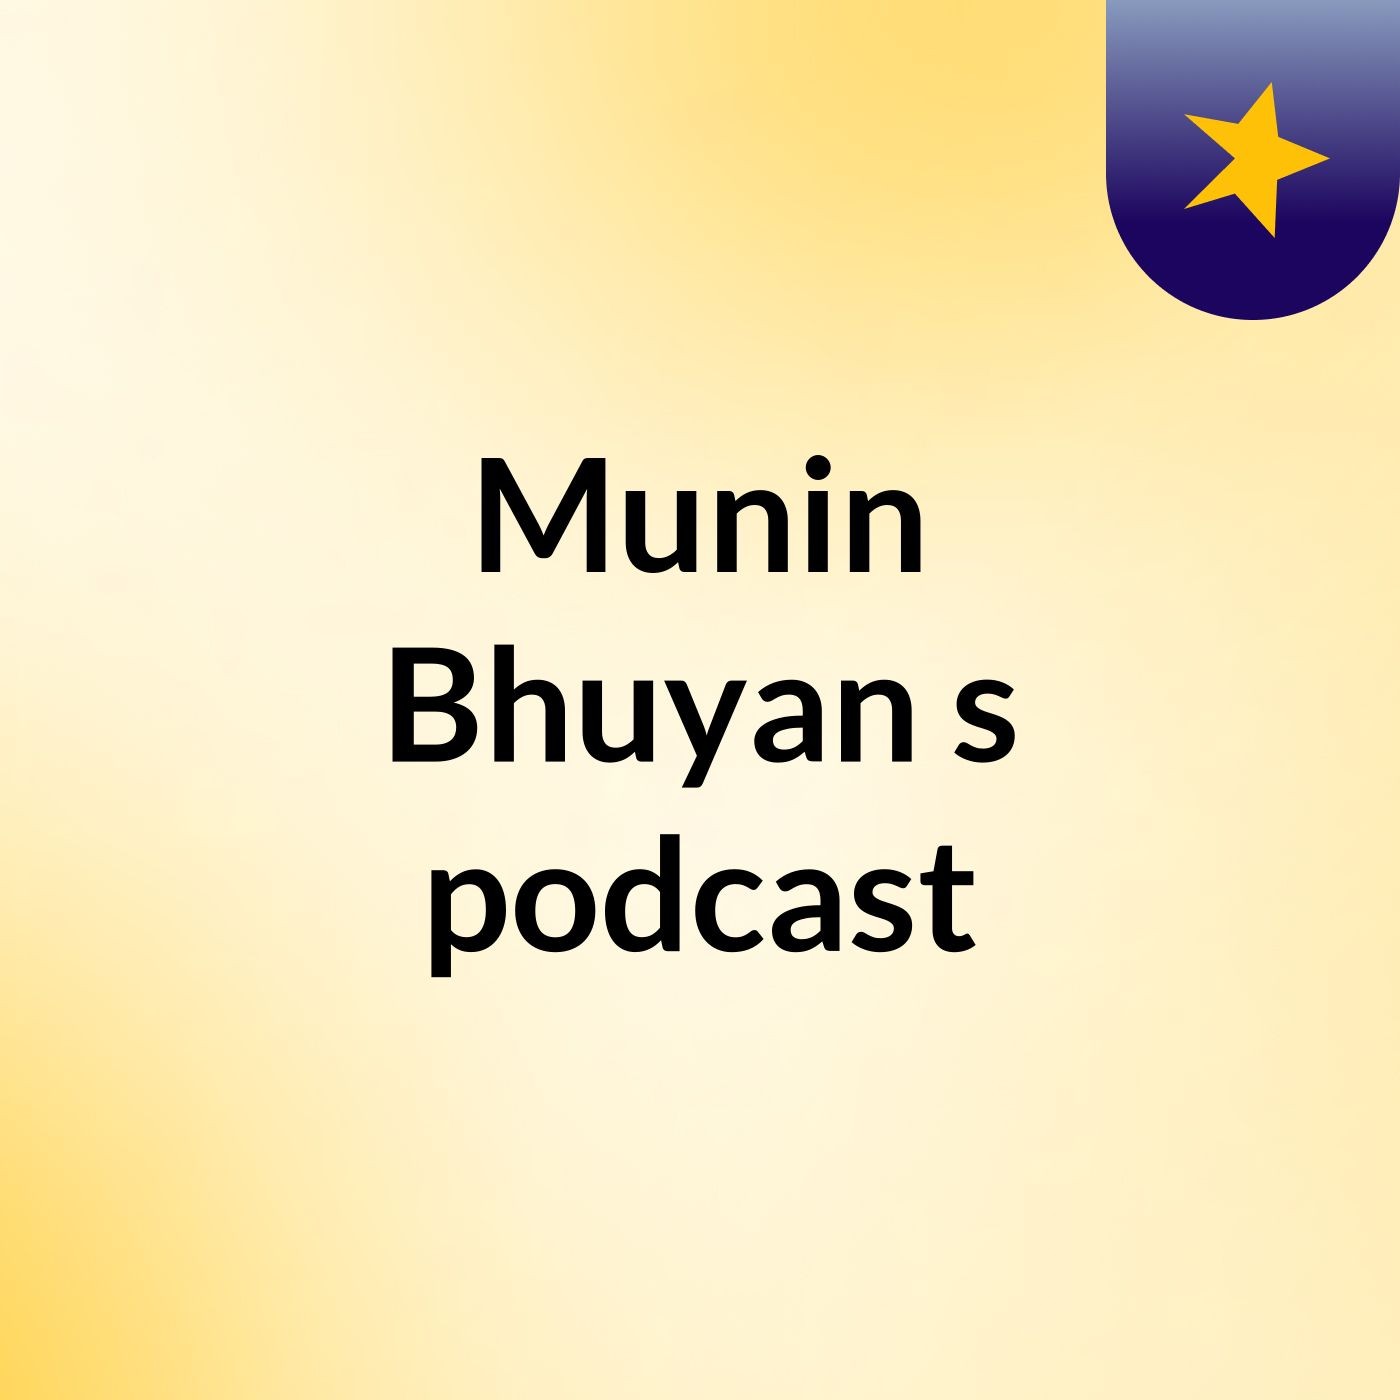 Munin Bhuyan's podcast